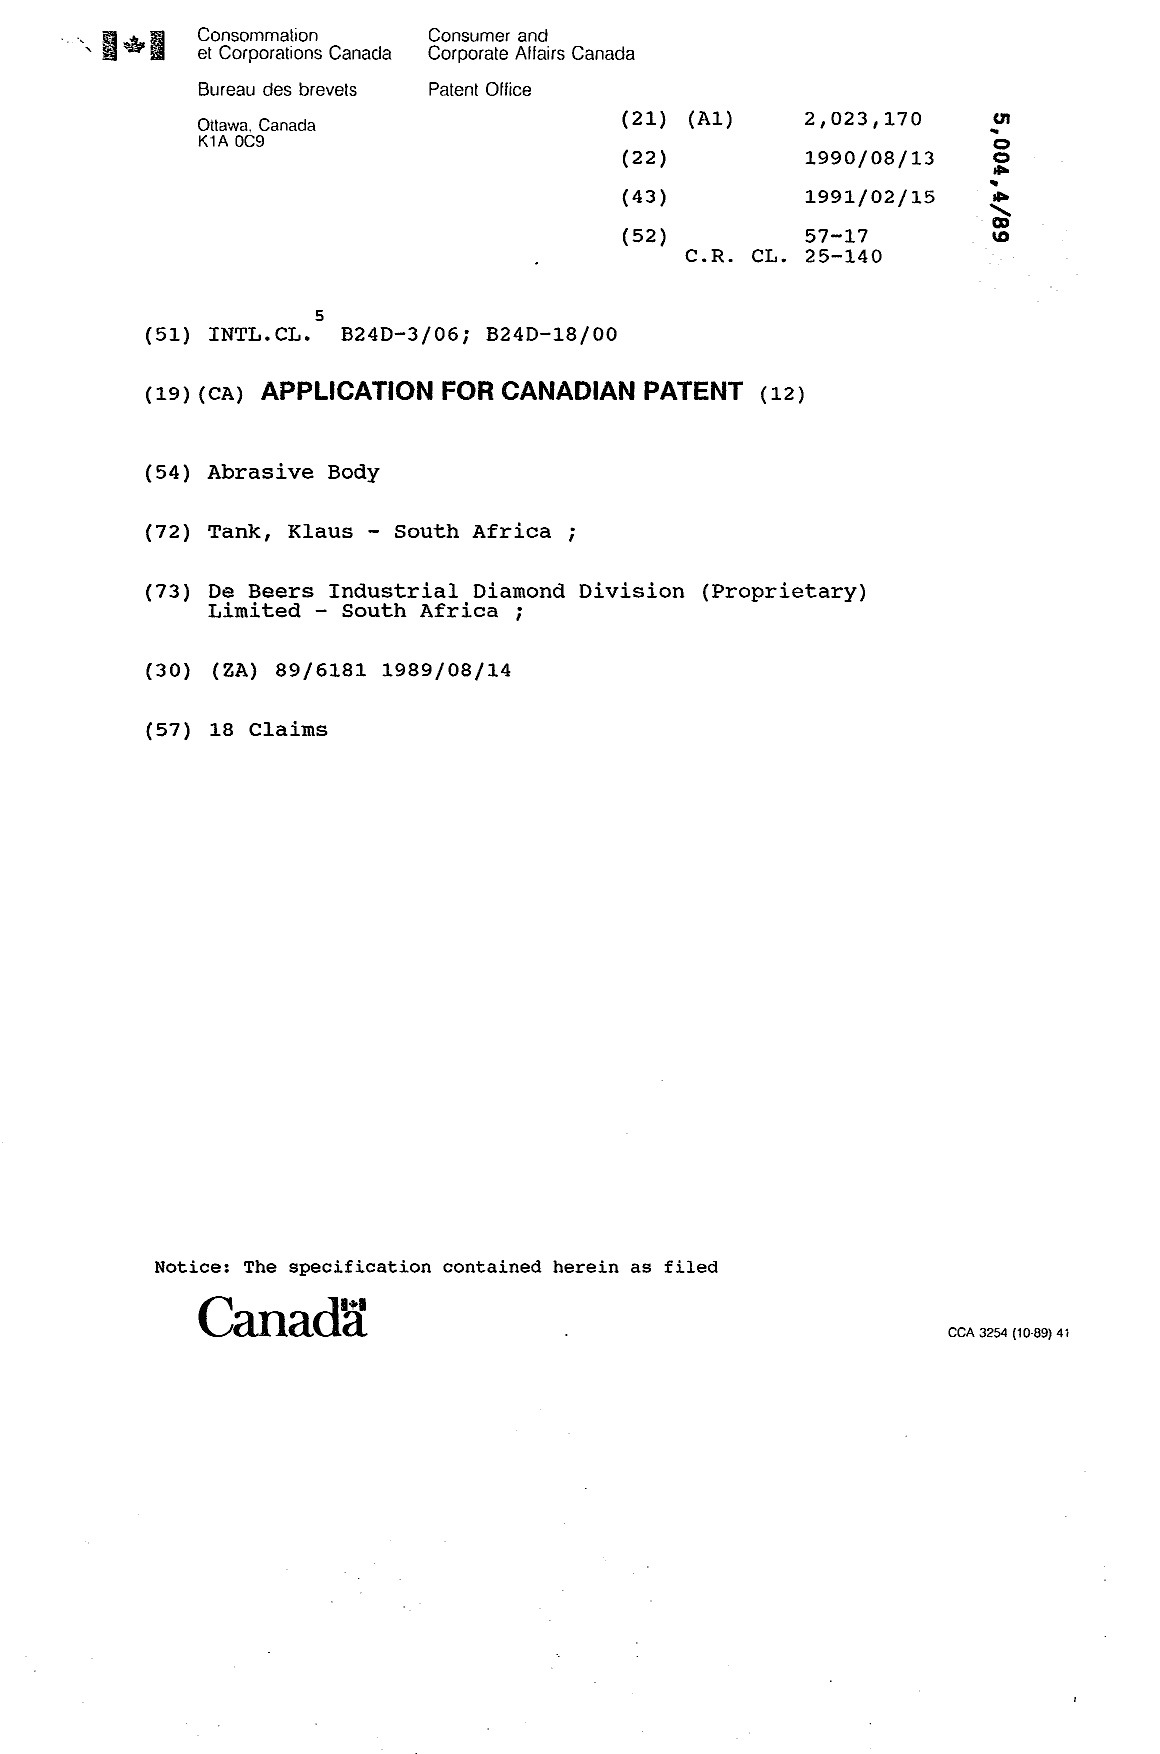 Document de brevet canadien 2023170. Page couverture 19910215. Image 1 de 1